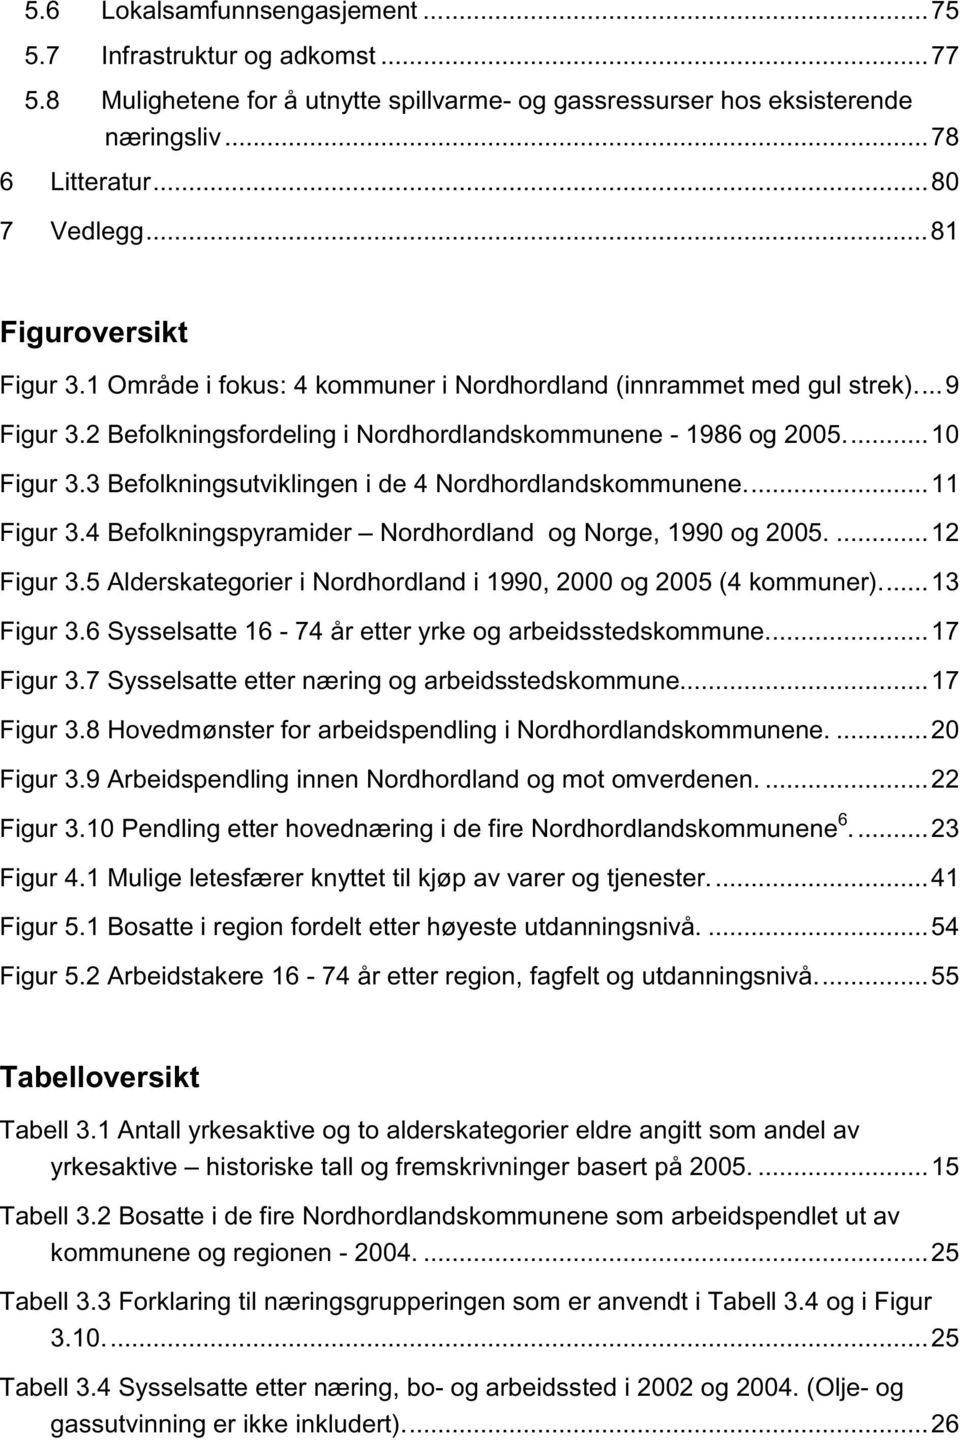 3 Befolkningsutviklingen i de 4 Nordhordlandskommunene...11 Figur 3.4 Befolkningspyramider Nordhordland og Norge, 1990 og 2005....12 Figur 3.